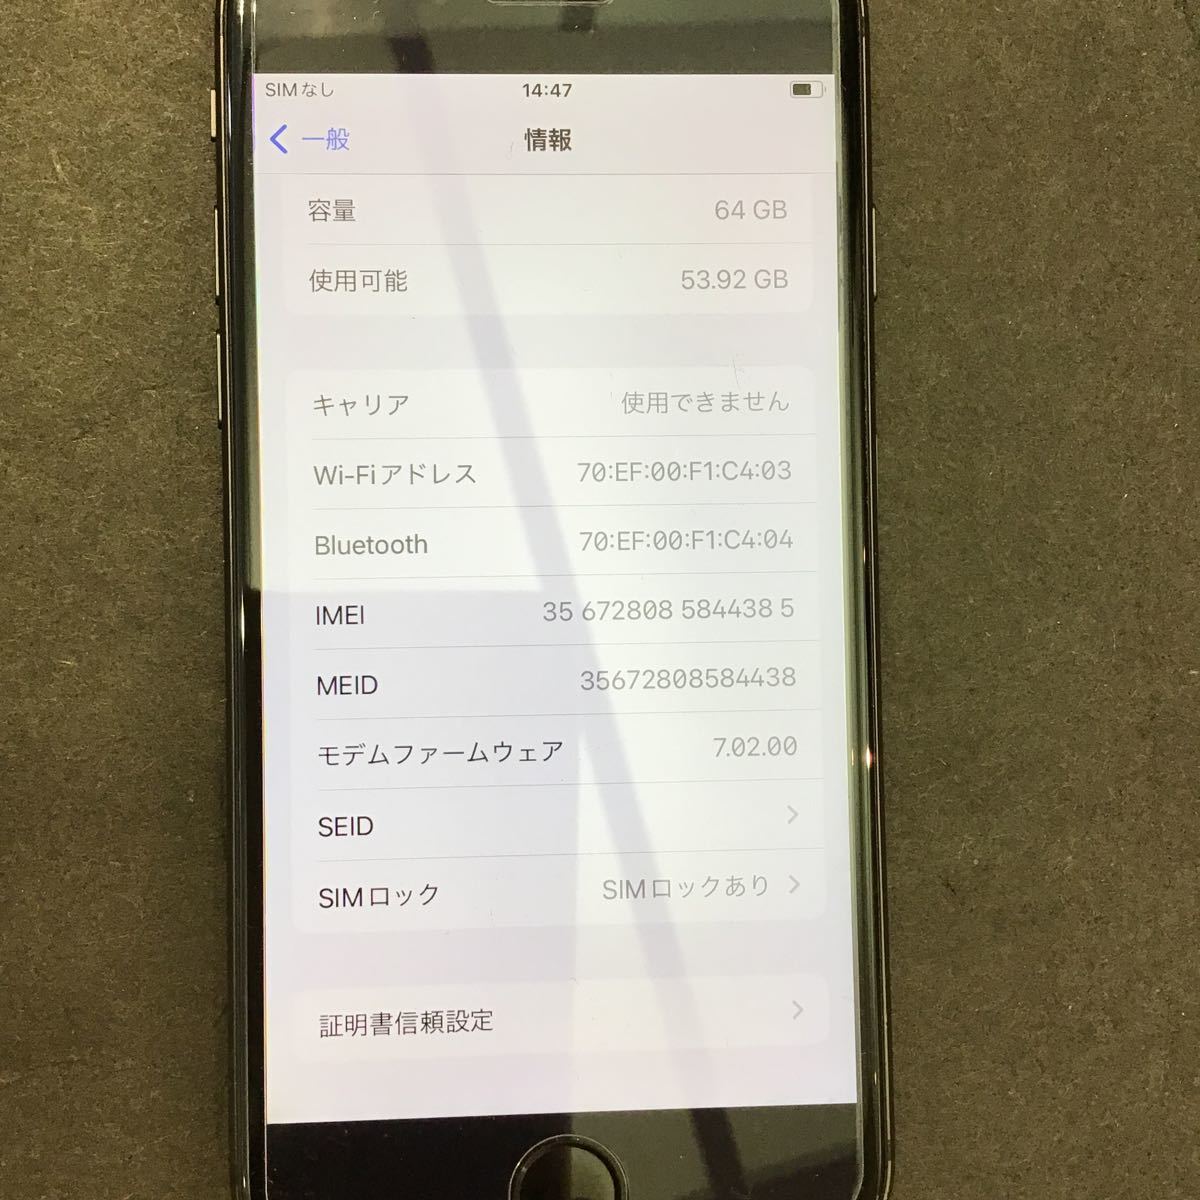 【Apple iPhone8】判定〇 アップル アイフォン エイト 64GB スペースグレイ ブラック系 端末 本体 スマホ ケータイ パーツ 4823/DE3_画像9